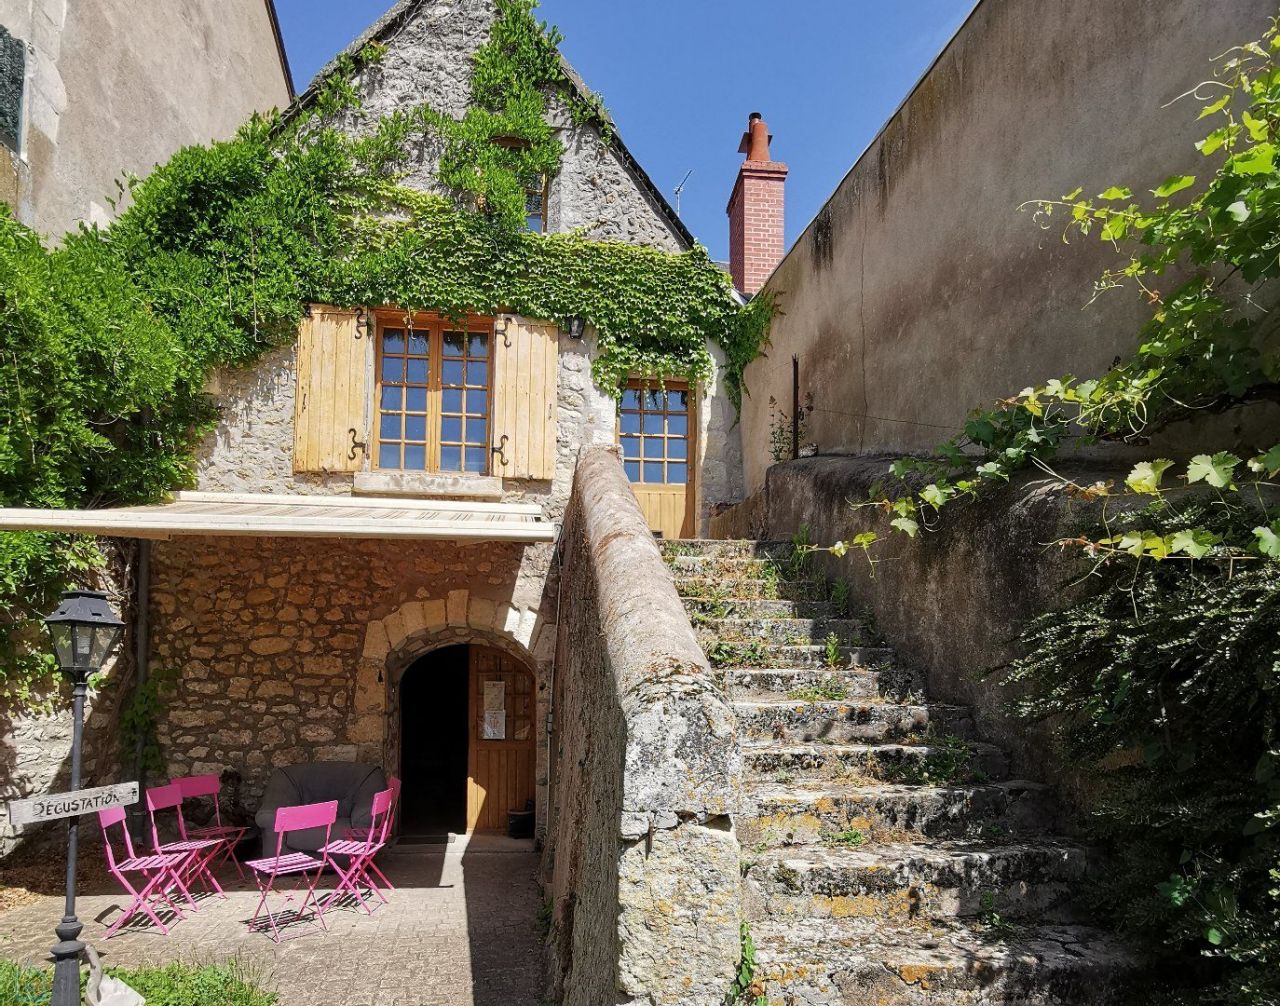 Casa en el Centro-Valle del Loira, Francia - imagen 1